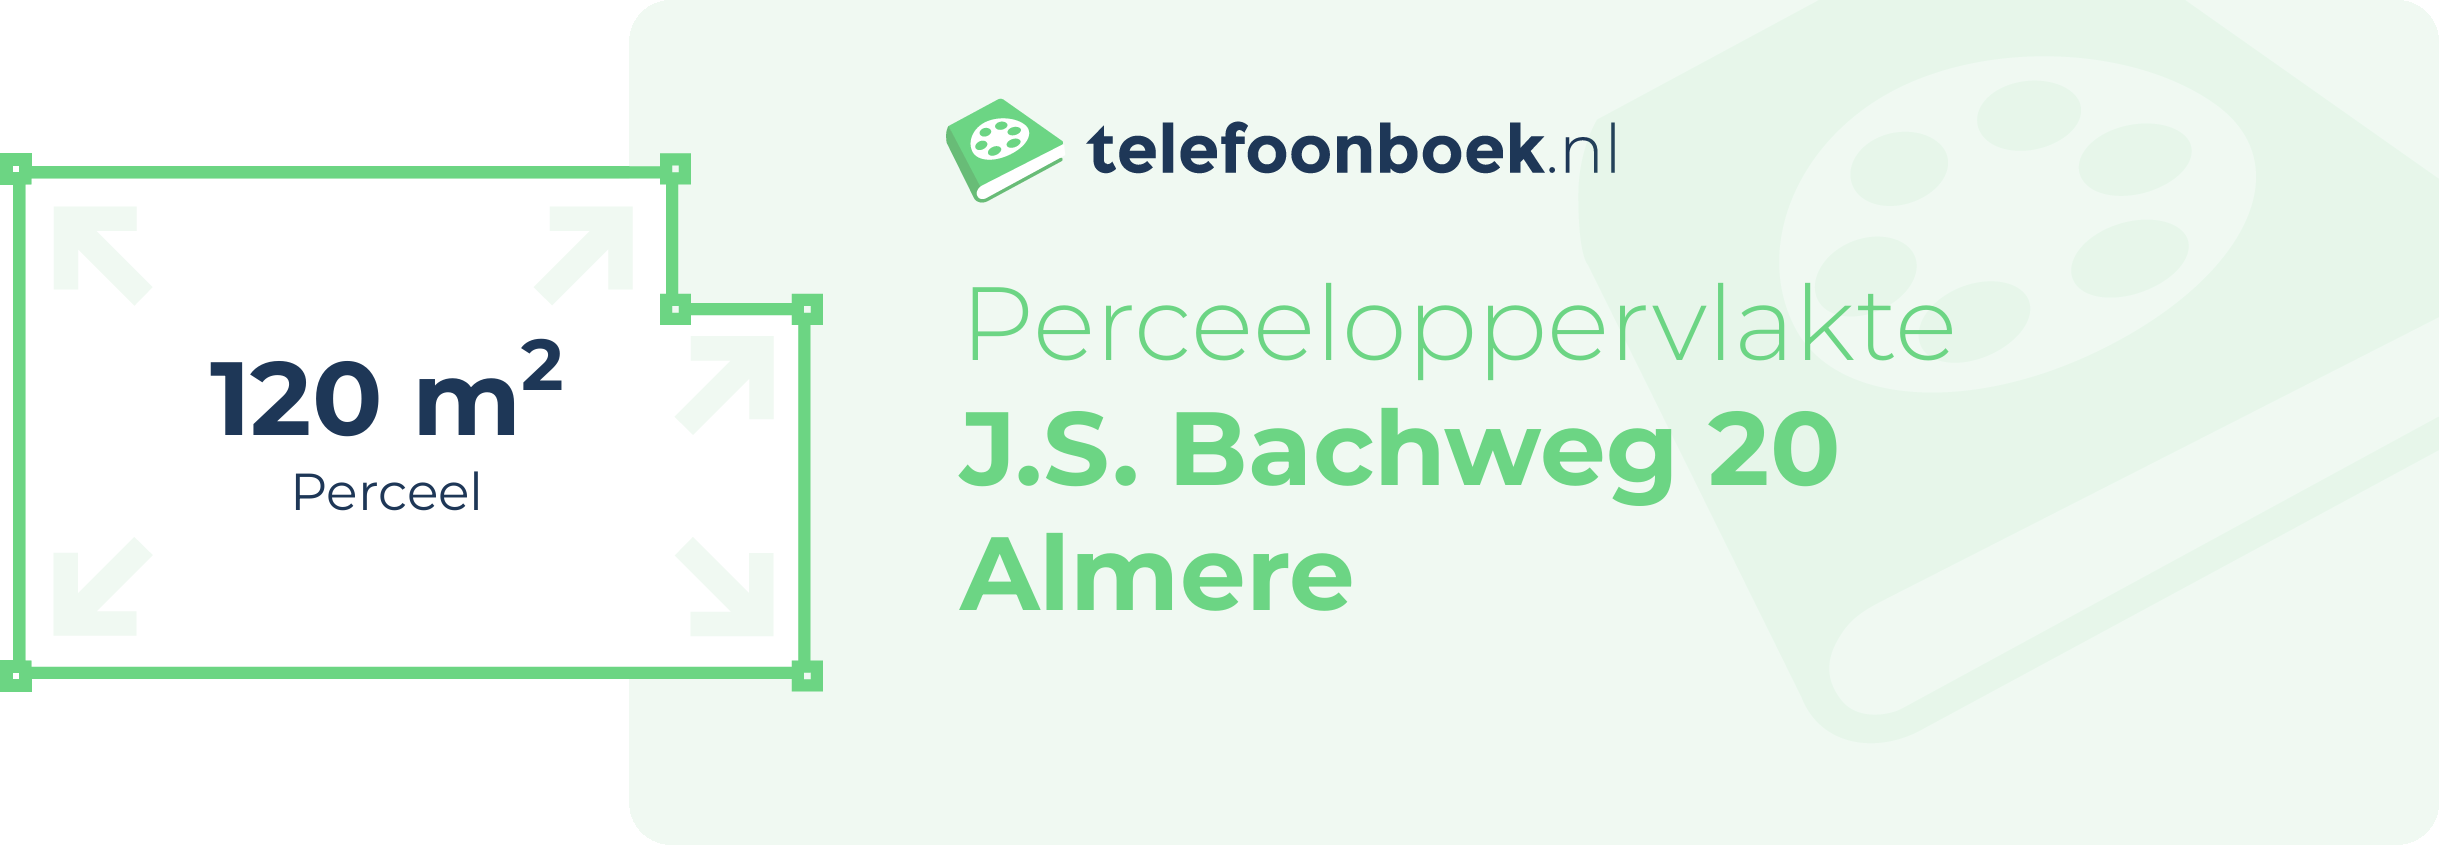 Perceeloppervlakte J.S. Bachweg 20 Almere